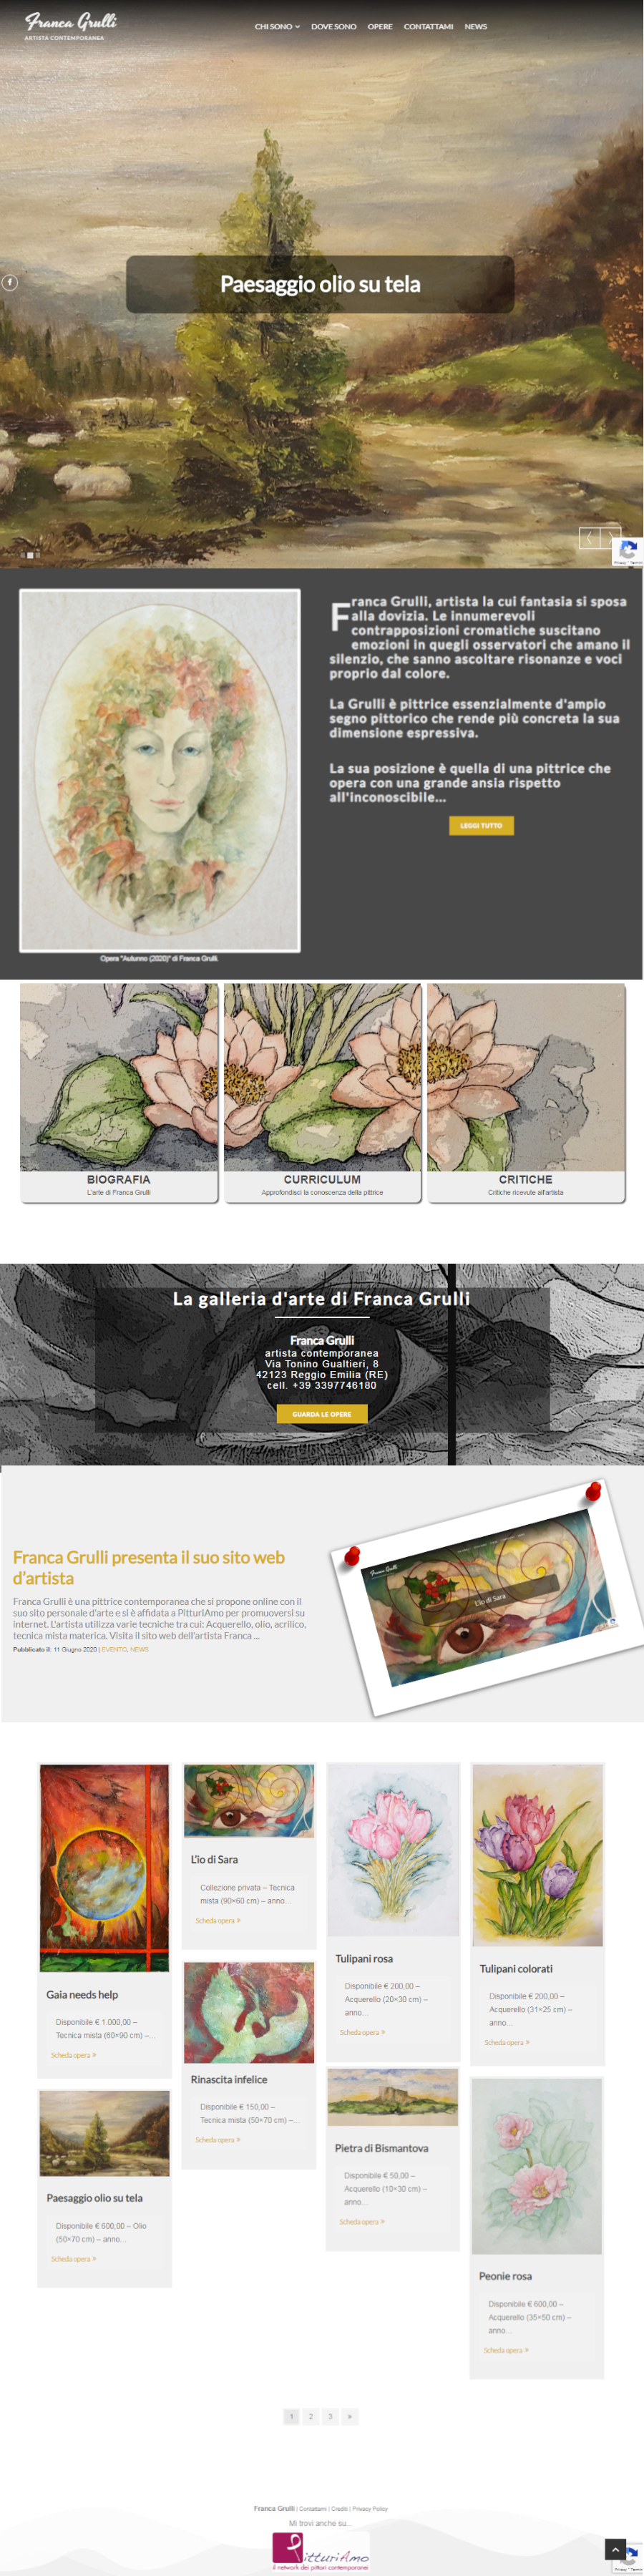 Il sito web dell'artista Franca Grulli - Homepage